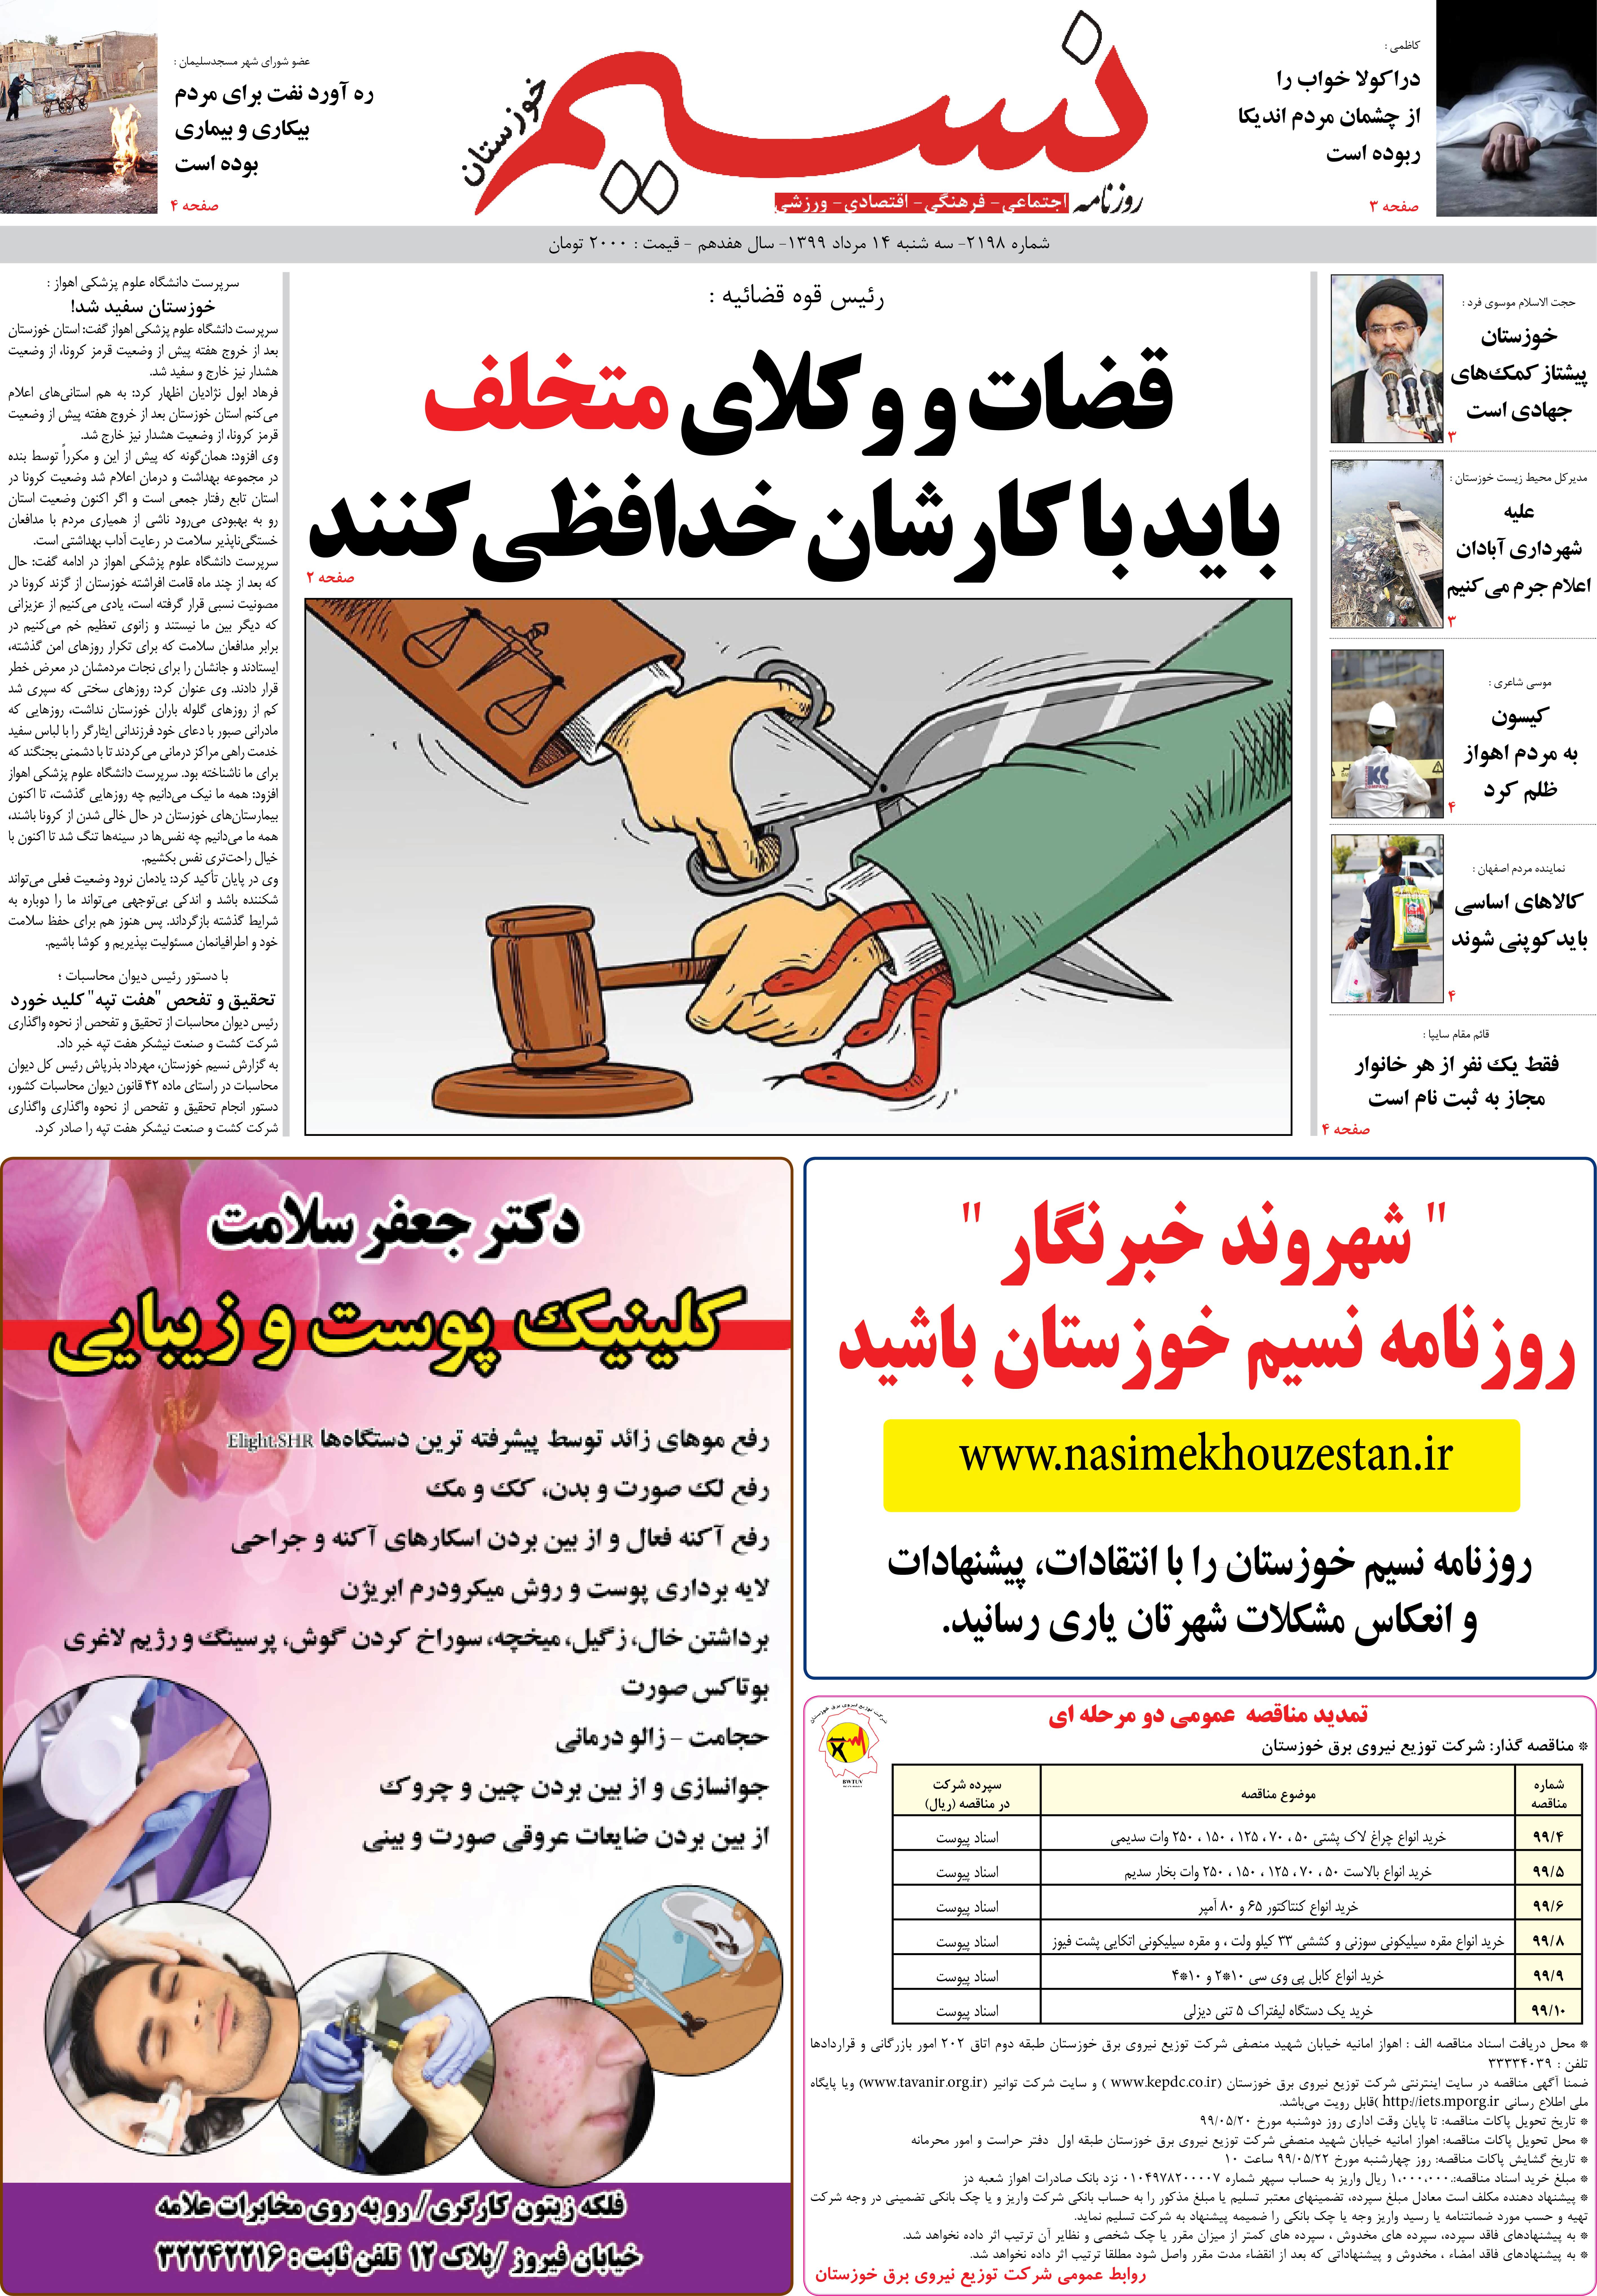 صفحه اصلی روزنامه نسیم شماره 2198 